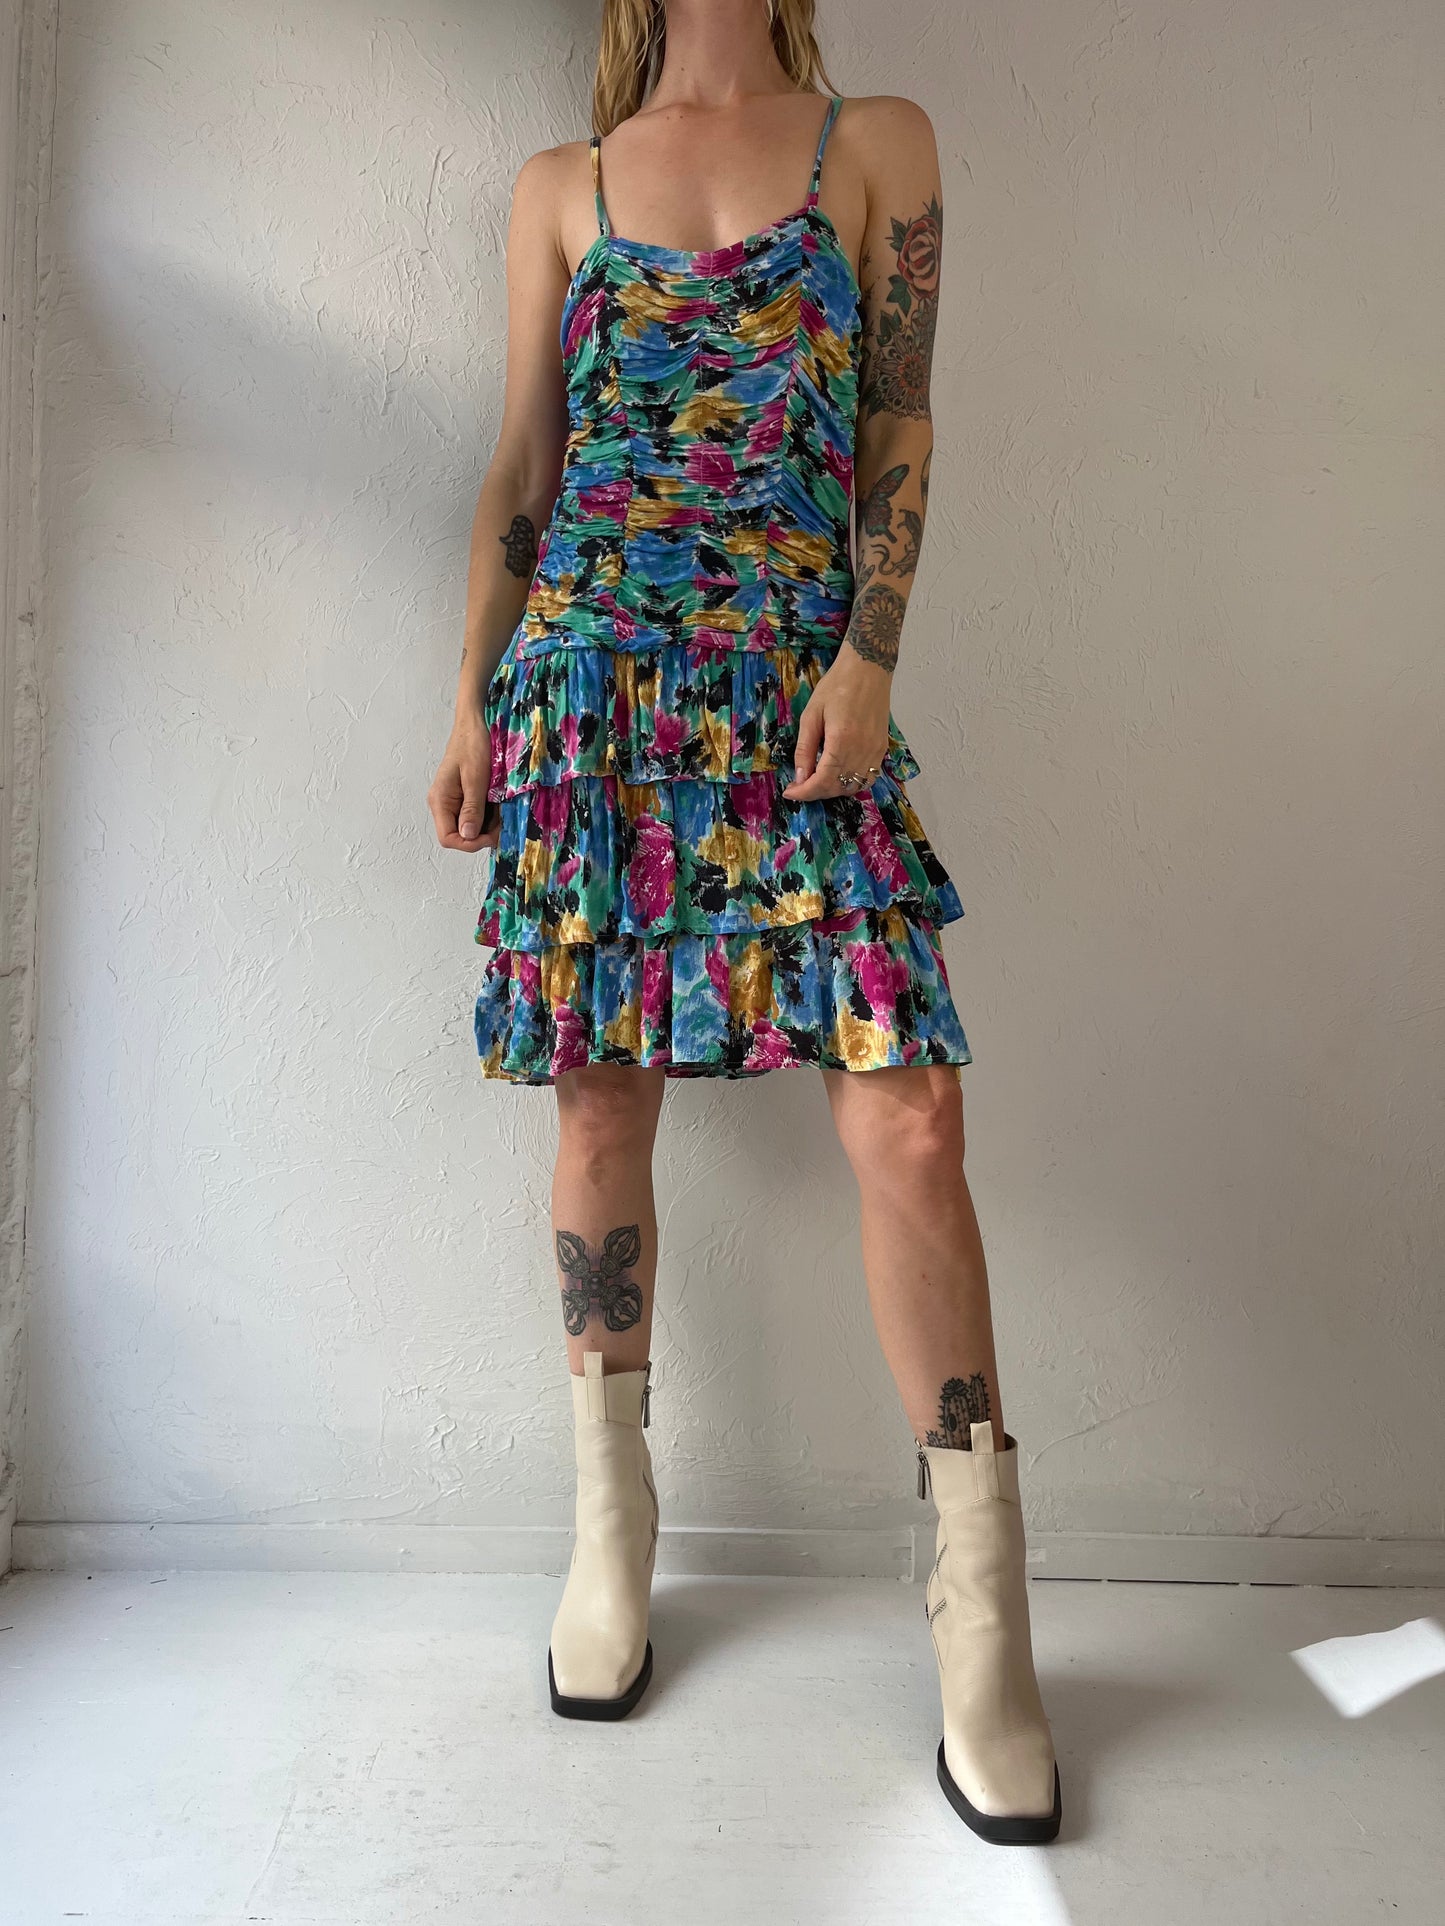 90s Rainbow Ruched Ruffle Sleeveless Dress / Medium